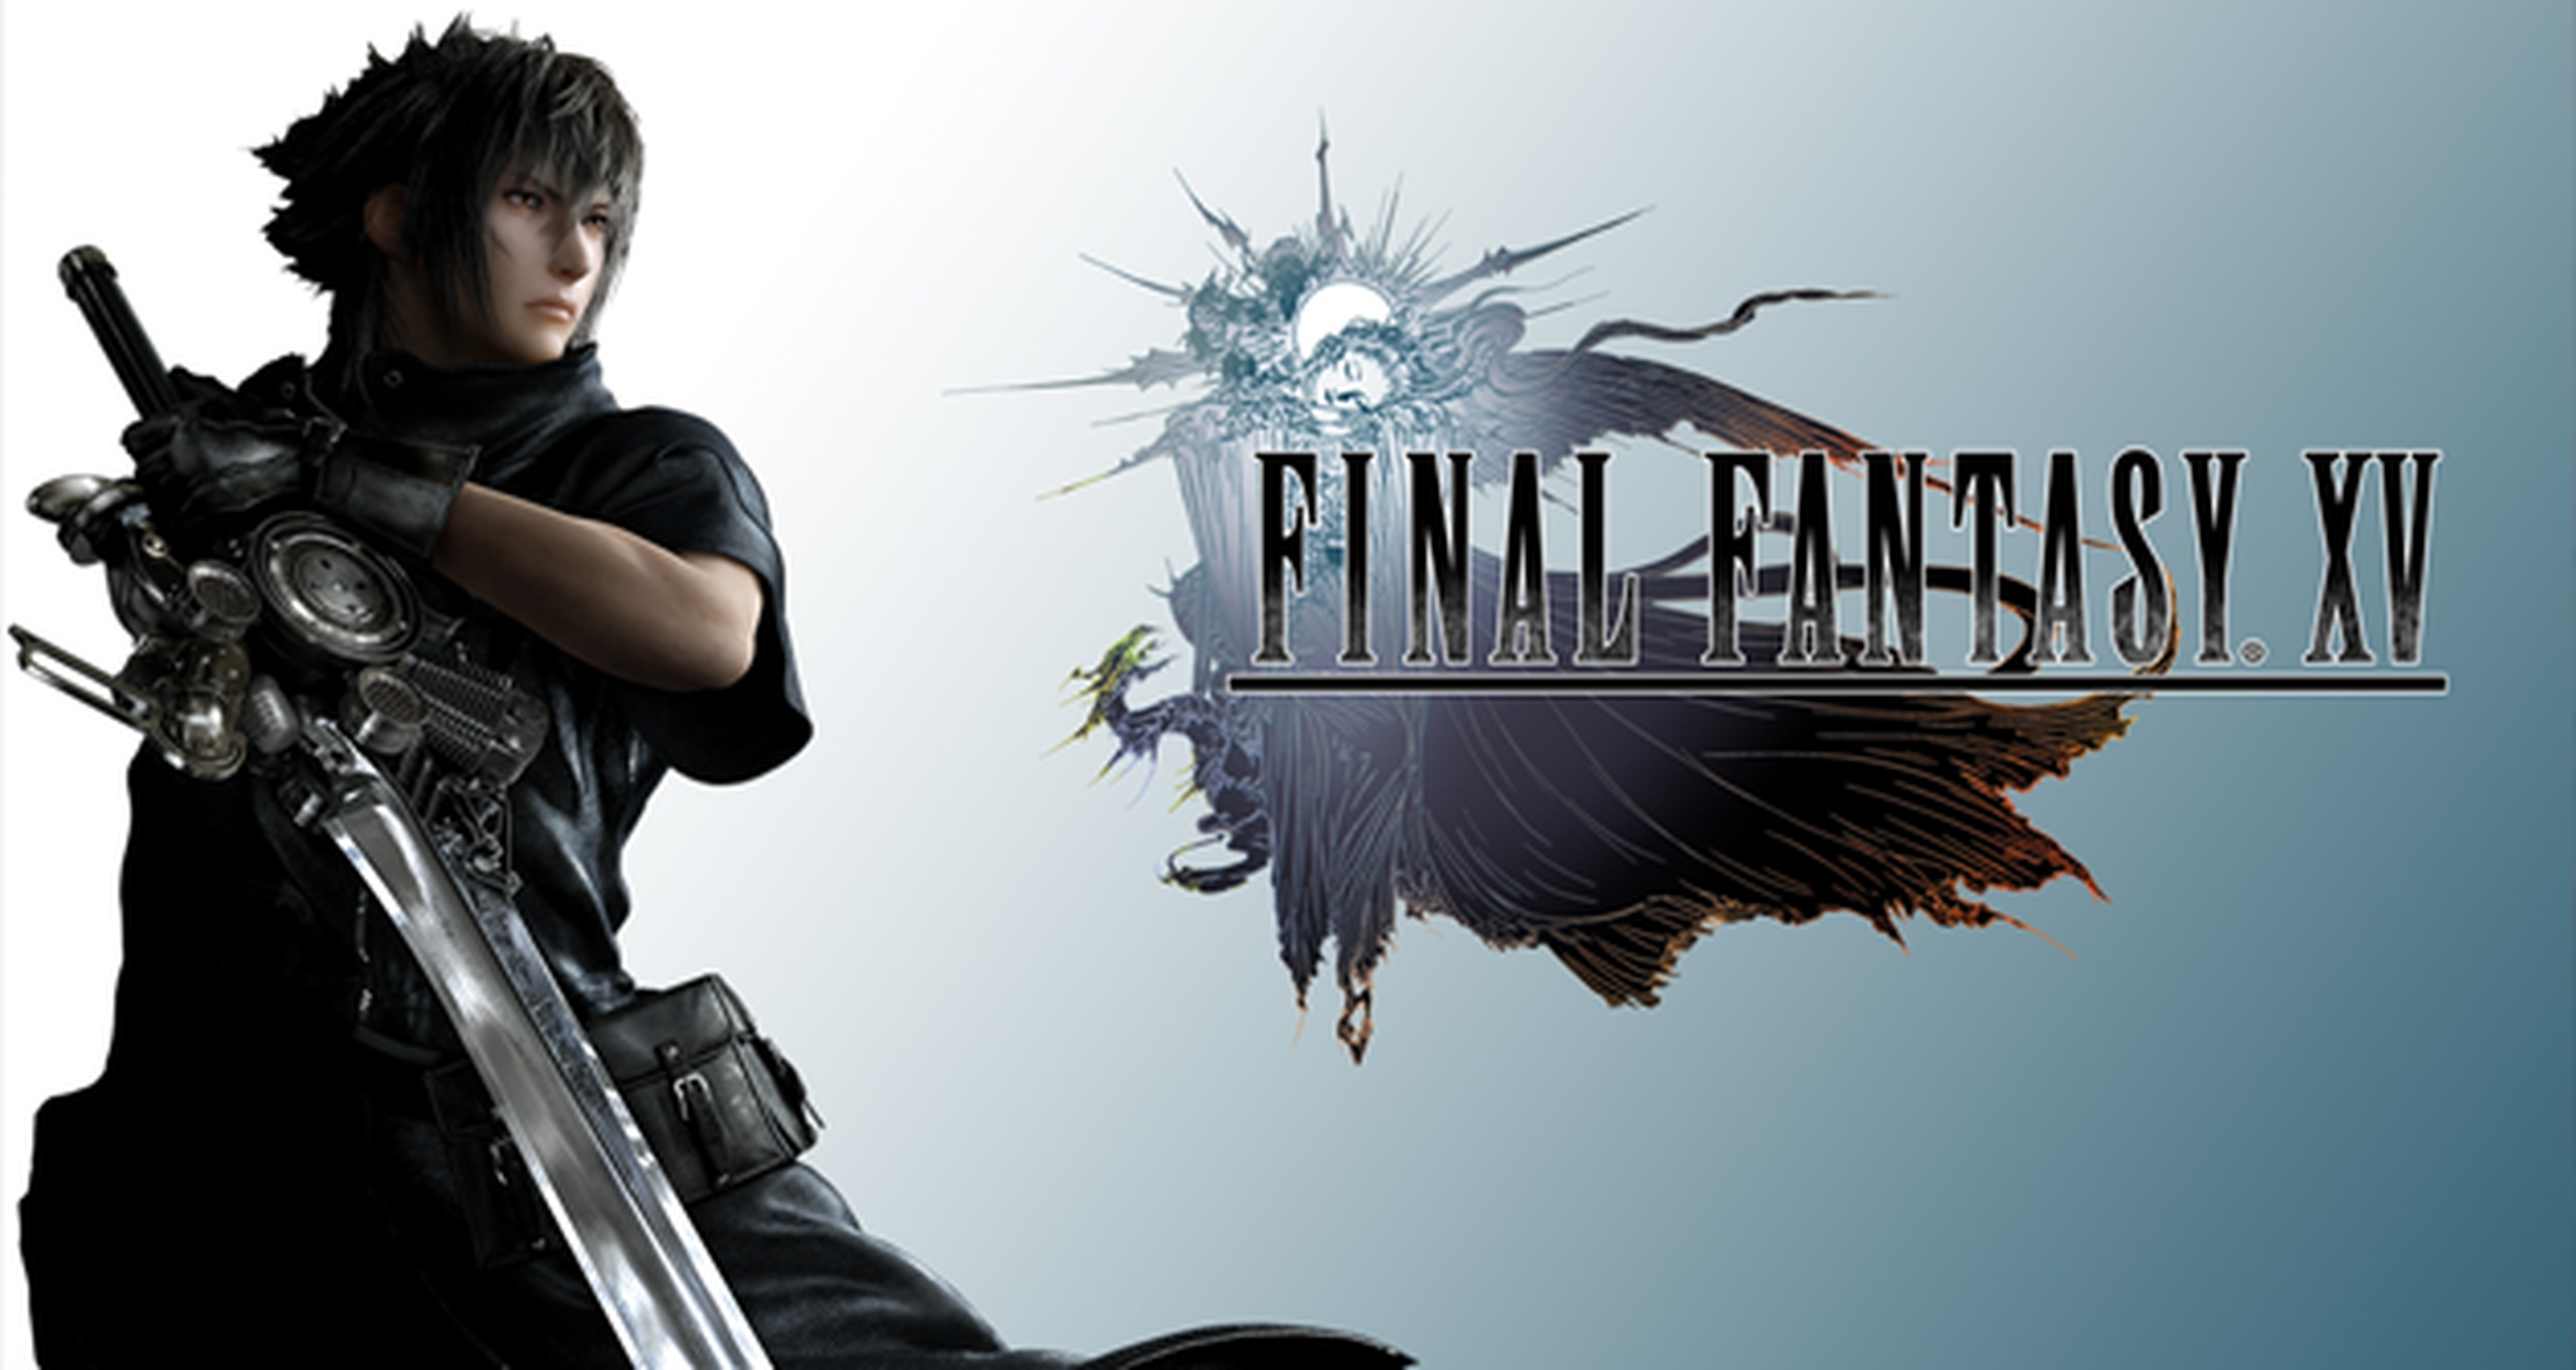 Square Enix quiere monstruos más realistas para Final Fantasy XV